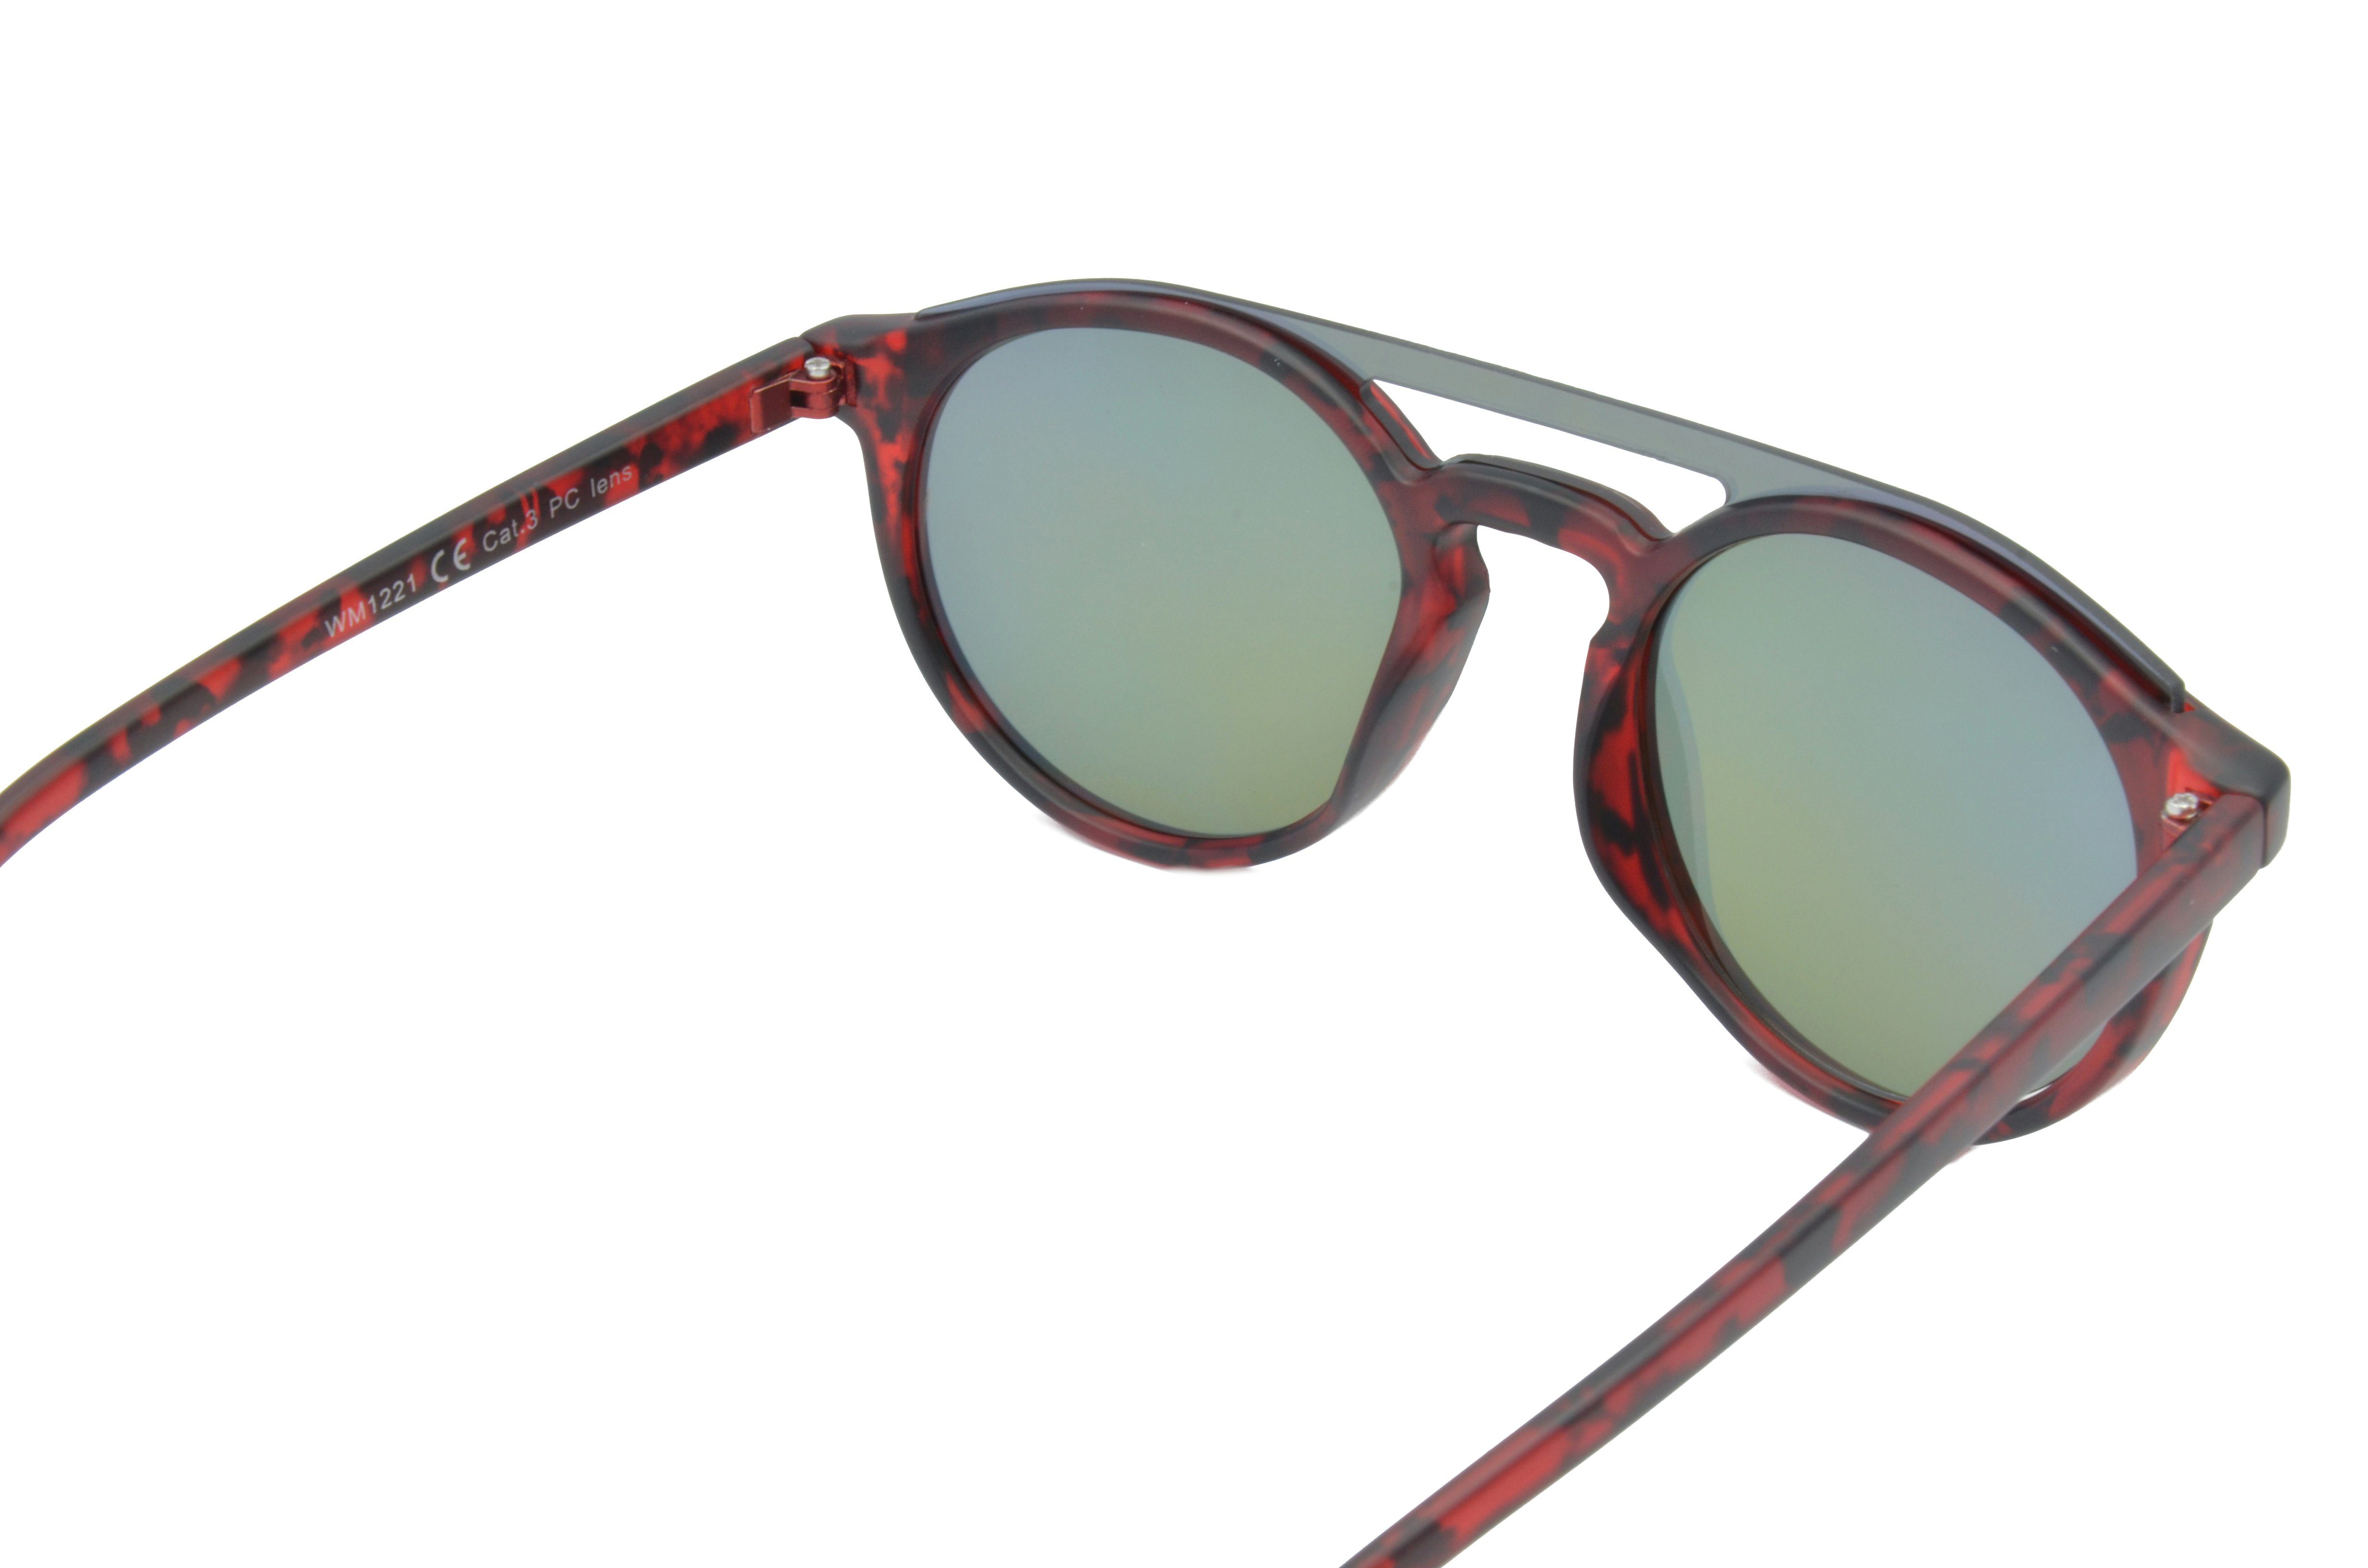 Gamswild Sonnenbrille WM1221 GAMSSTYLE Mode grün, Herren braun Fashionbrille, rot Brille grün, Damen Unisex blau